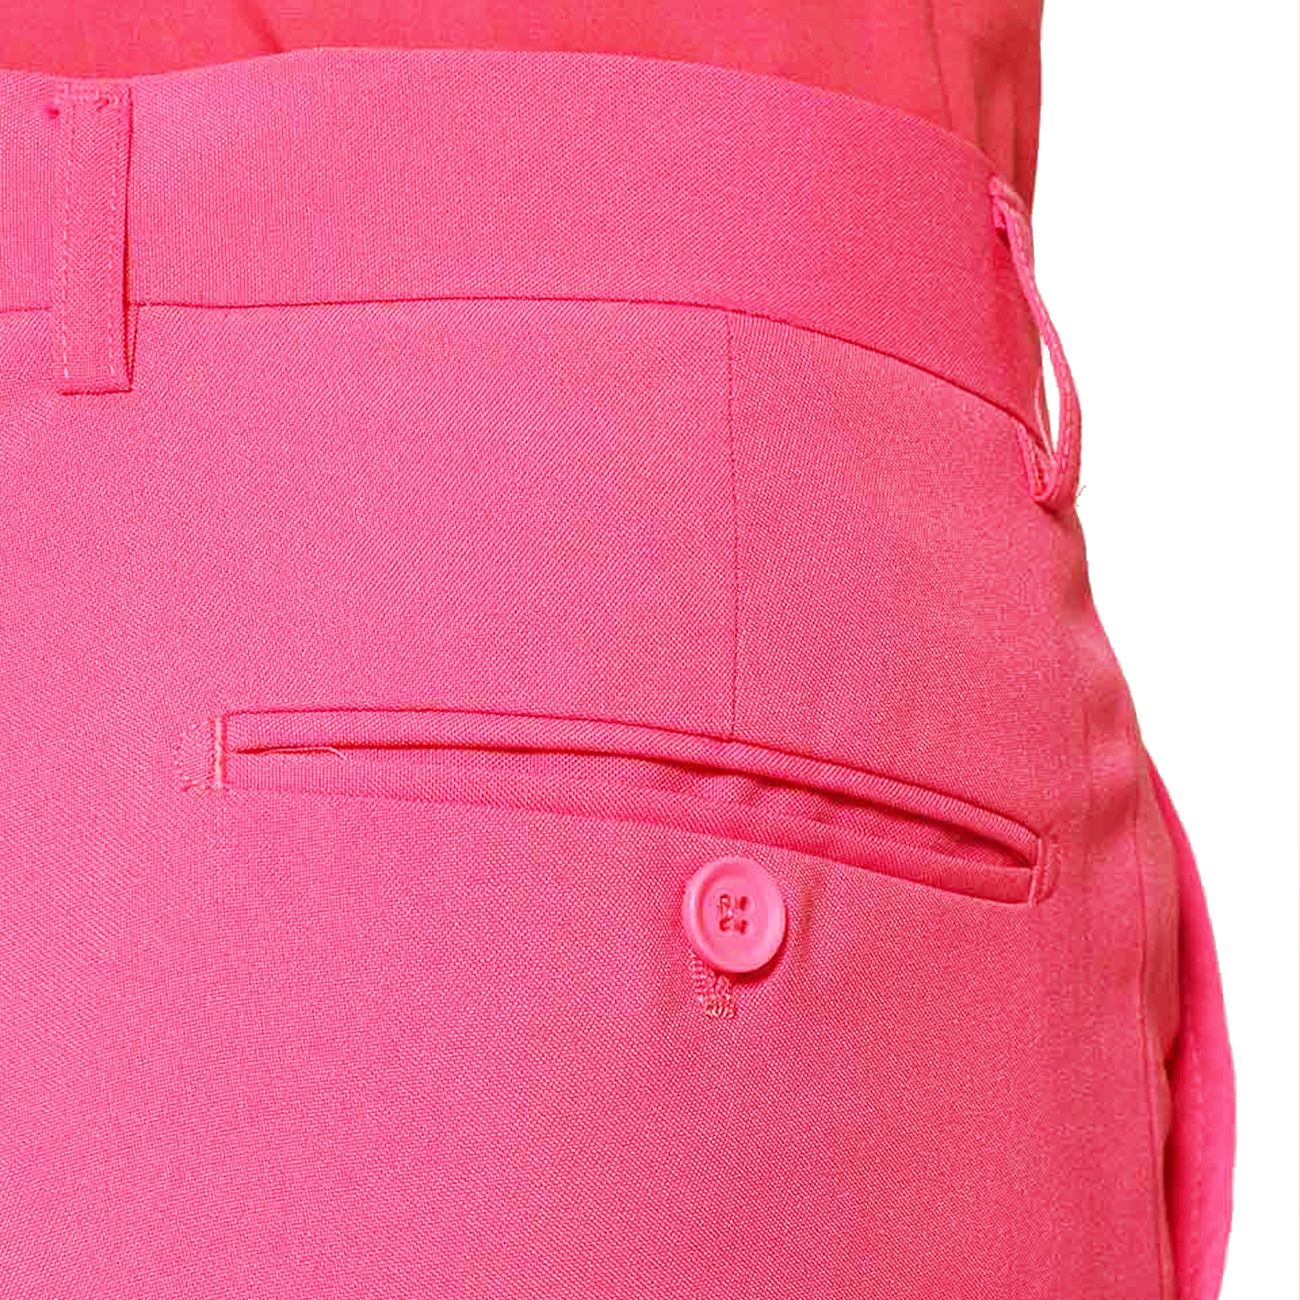 opposuits-mr-pink-kostym-16981-15